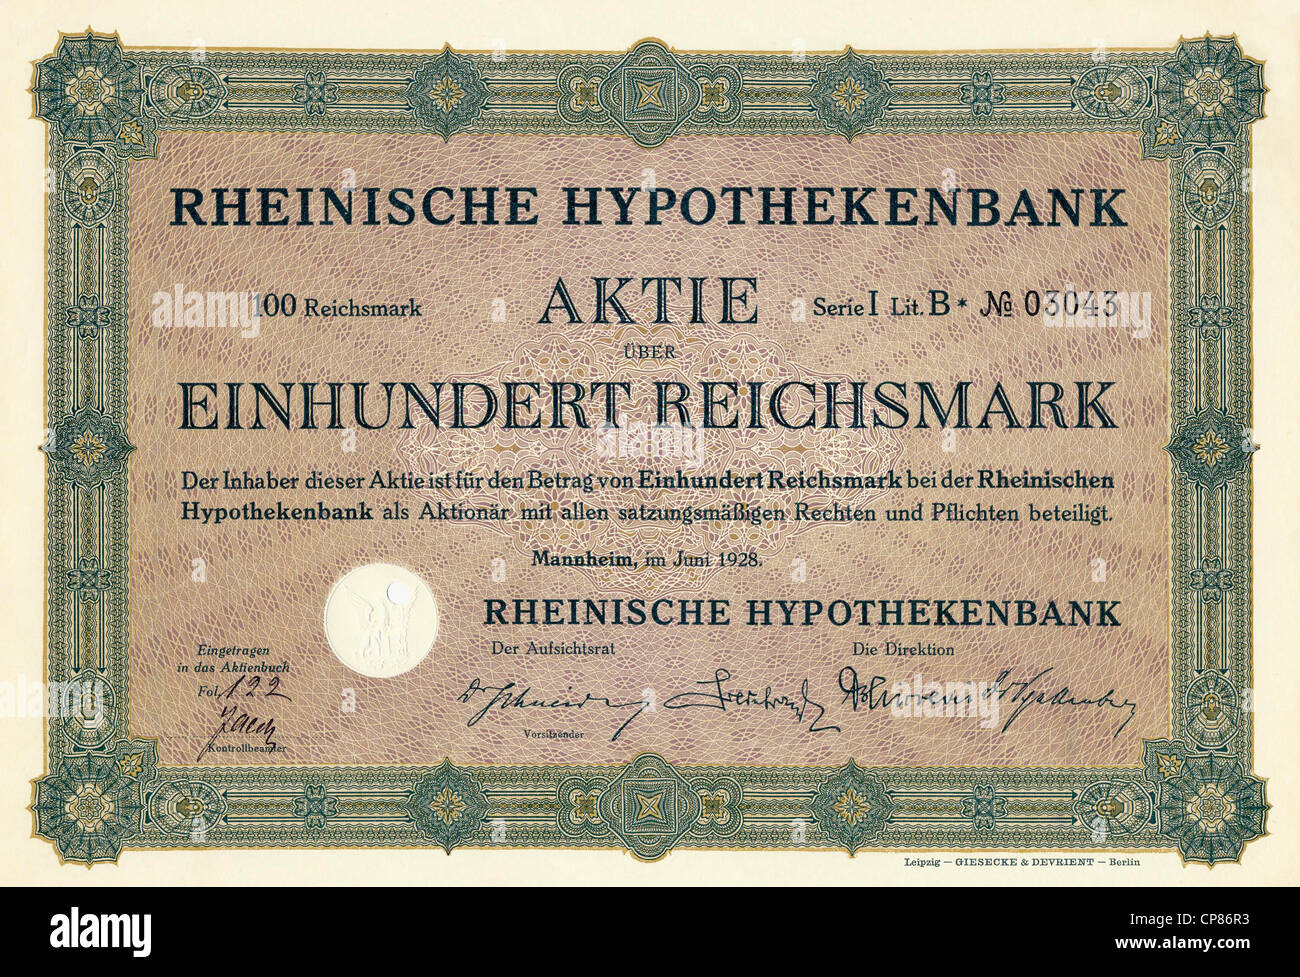 Historic stock certificate, Reichsmarks obligation, Germany, Historische Aktie über 100 Reichsmark, Rheinische Hypothekenbank, M Stock Photo